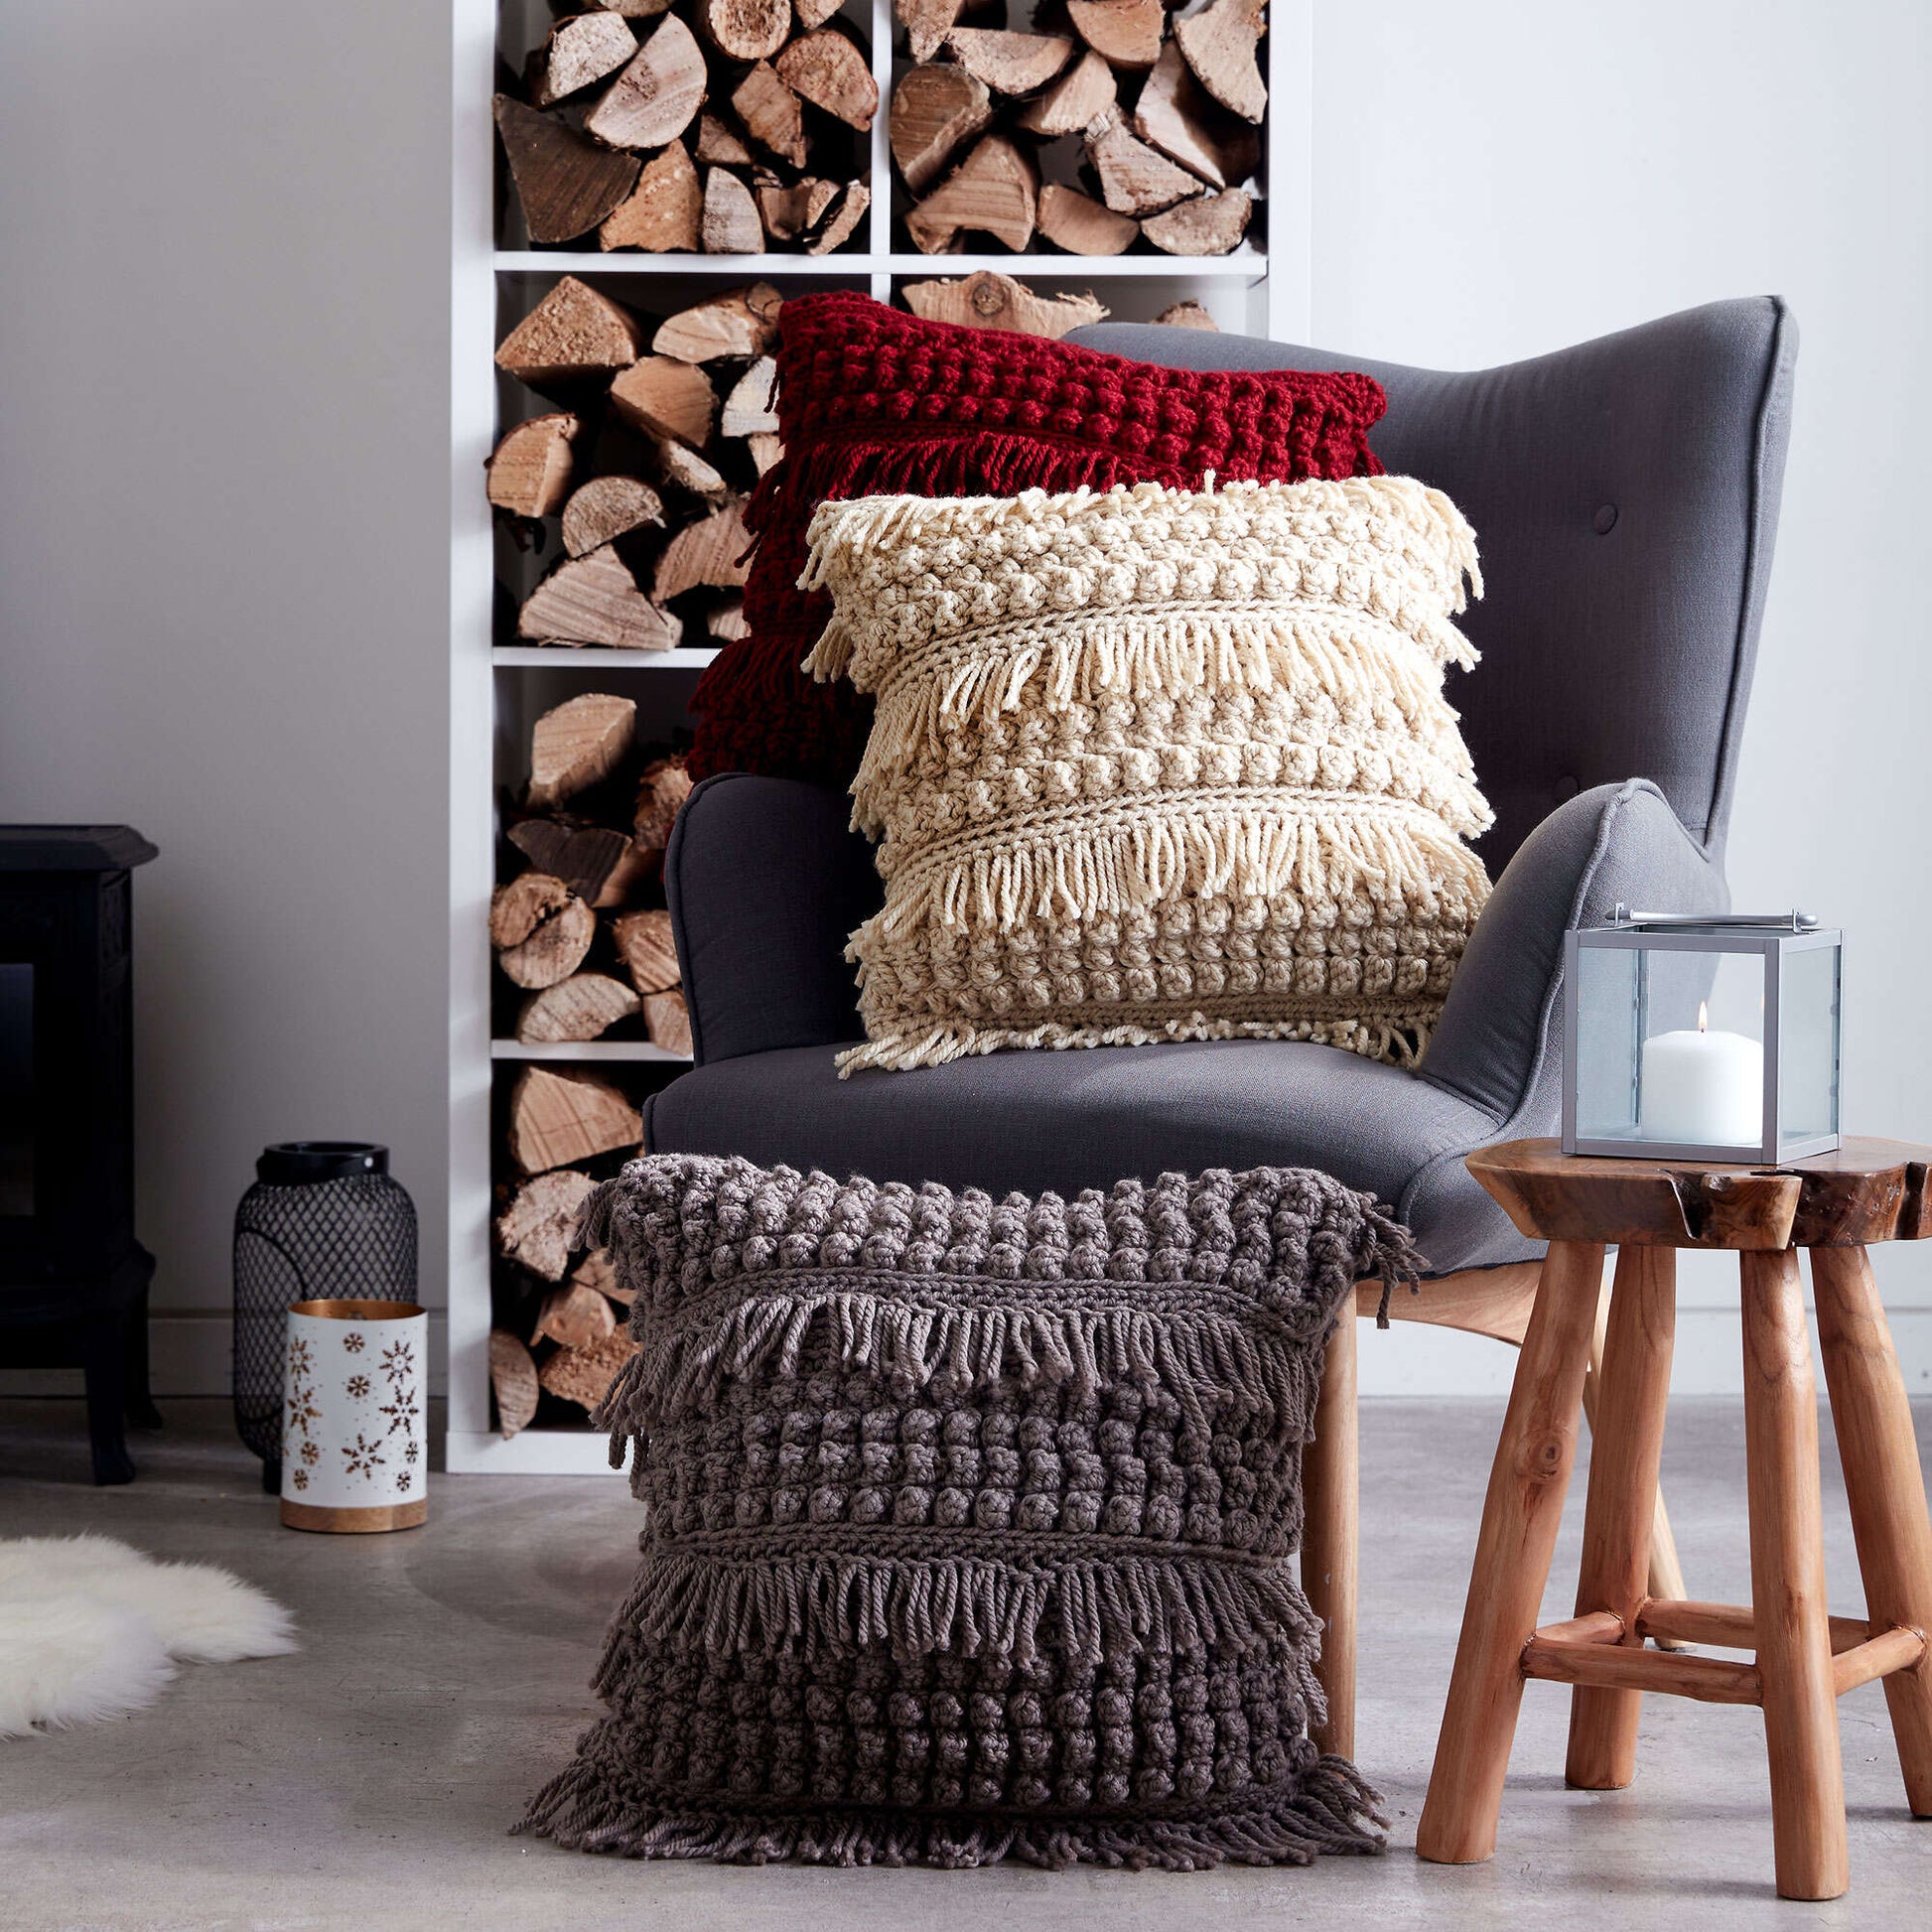 Free Bernat Tassel And Texture Crochet Pillow Pattern